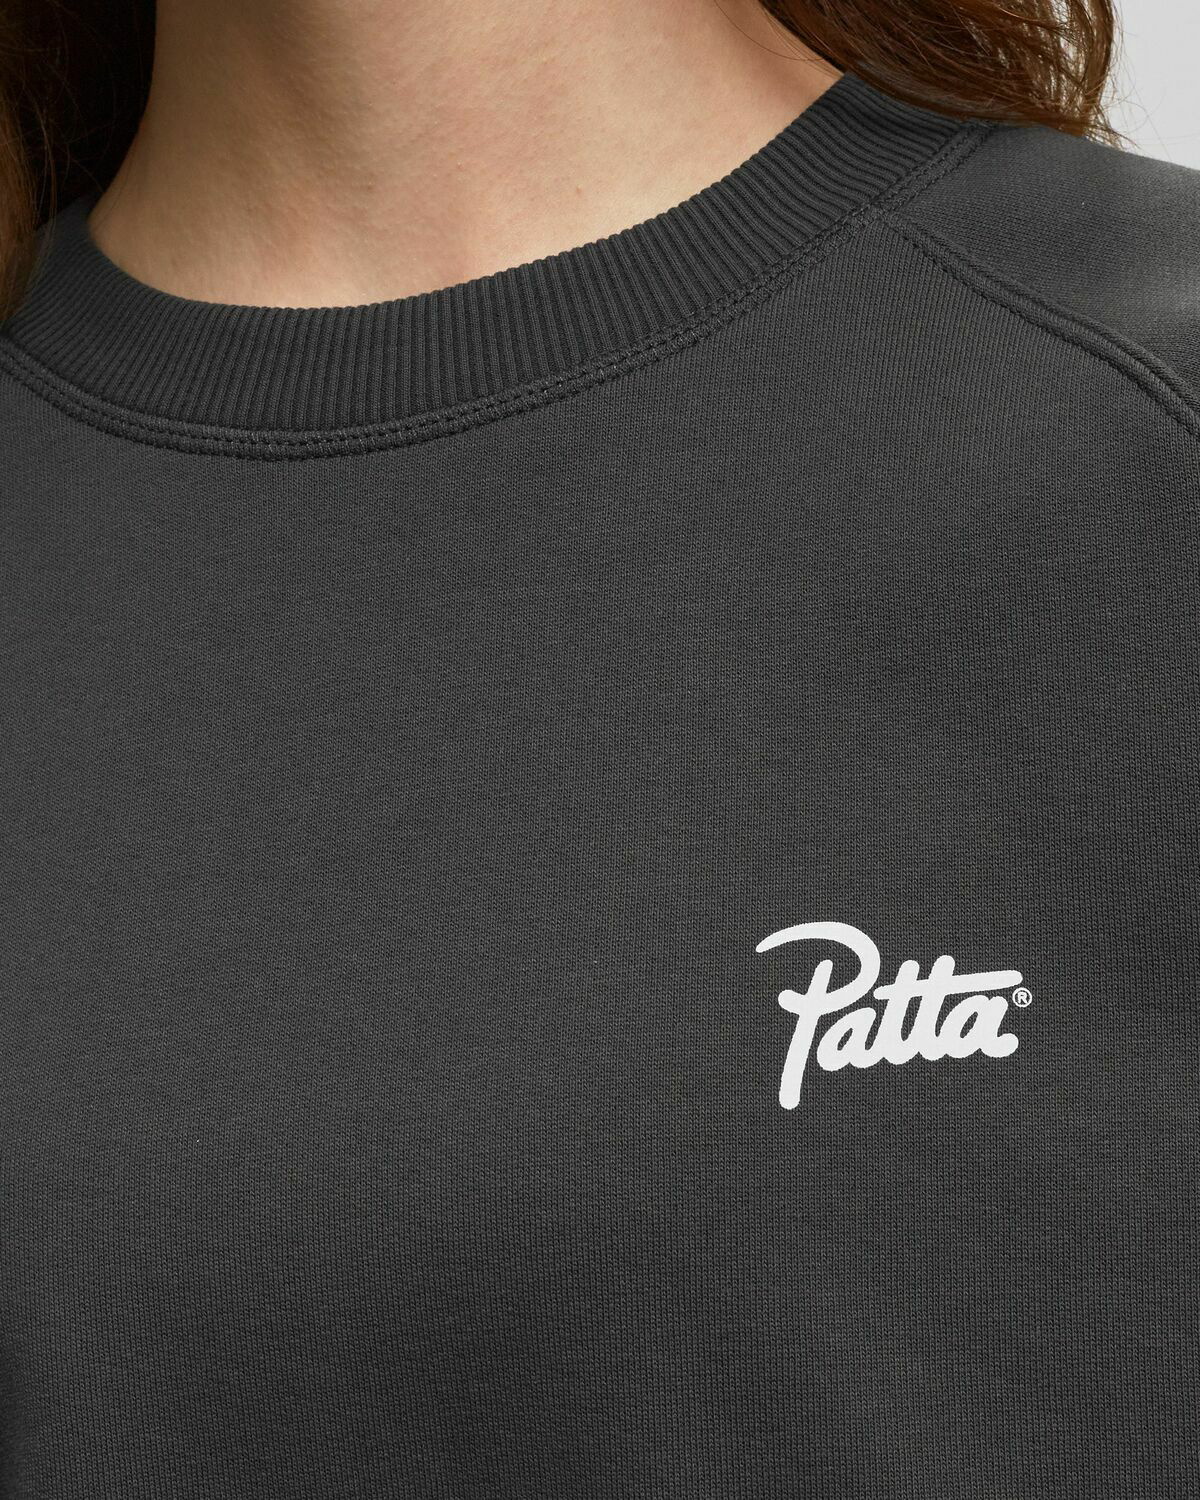 Patta Underwear Women Bralette (Black) – Patta UK